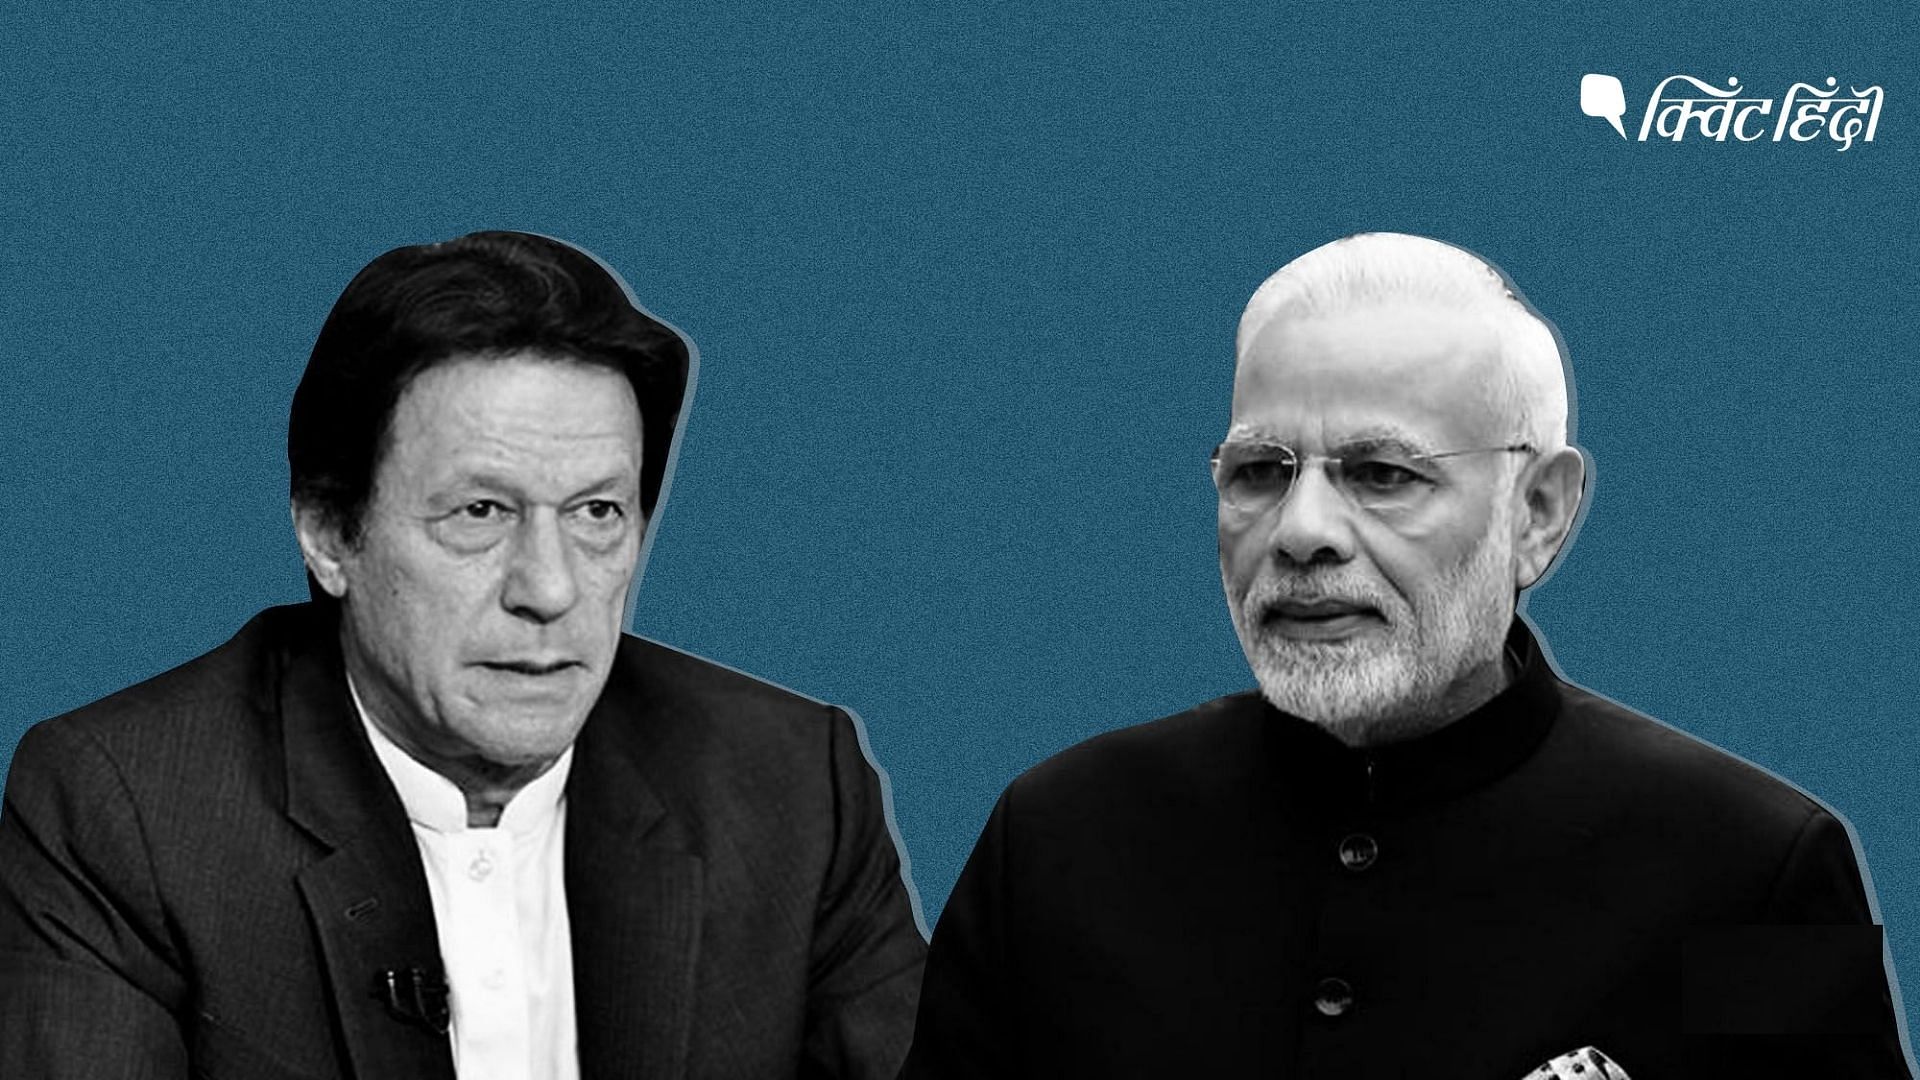 <div class="paragraphs"><p>इमरान खान का खुद की गिरेबान में न झांकना, बिगाड़ रहा भारत-पाकिस्तान का रिश्ता</p></div>